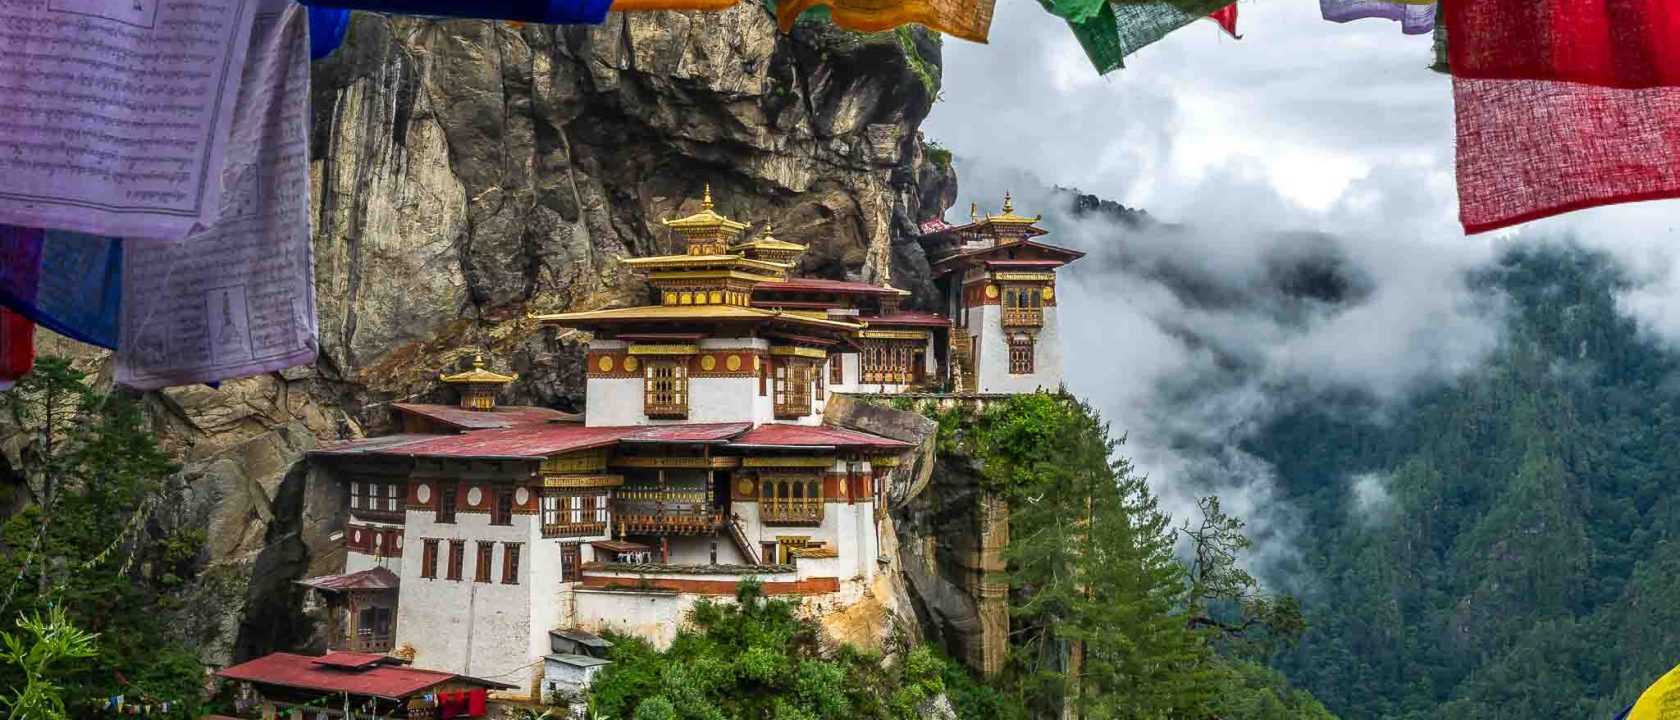 Fotoreise nach Bhutan - Tiger's Nest mit Gebetsfahnen